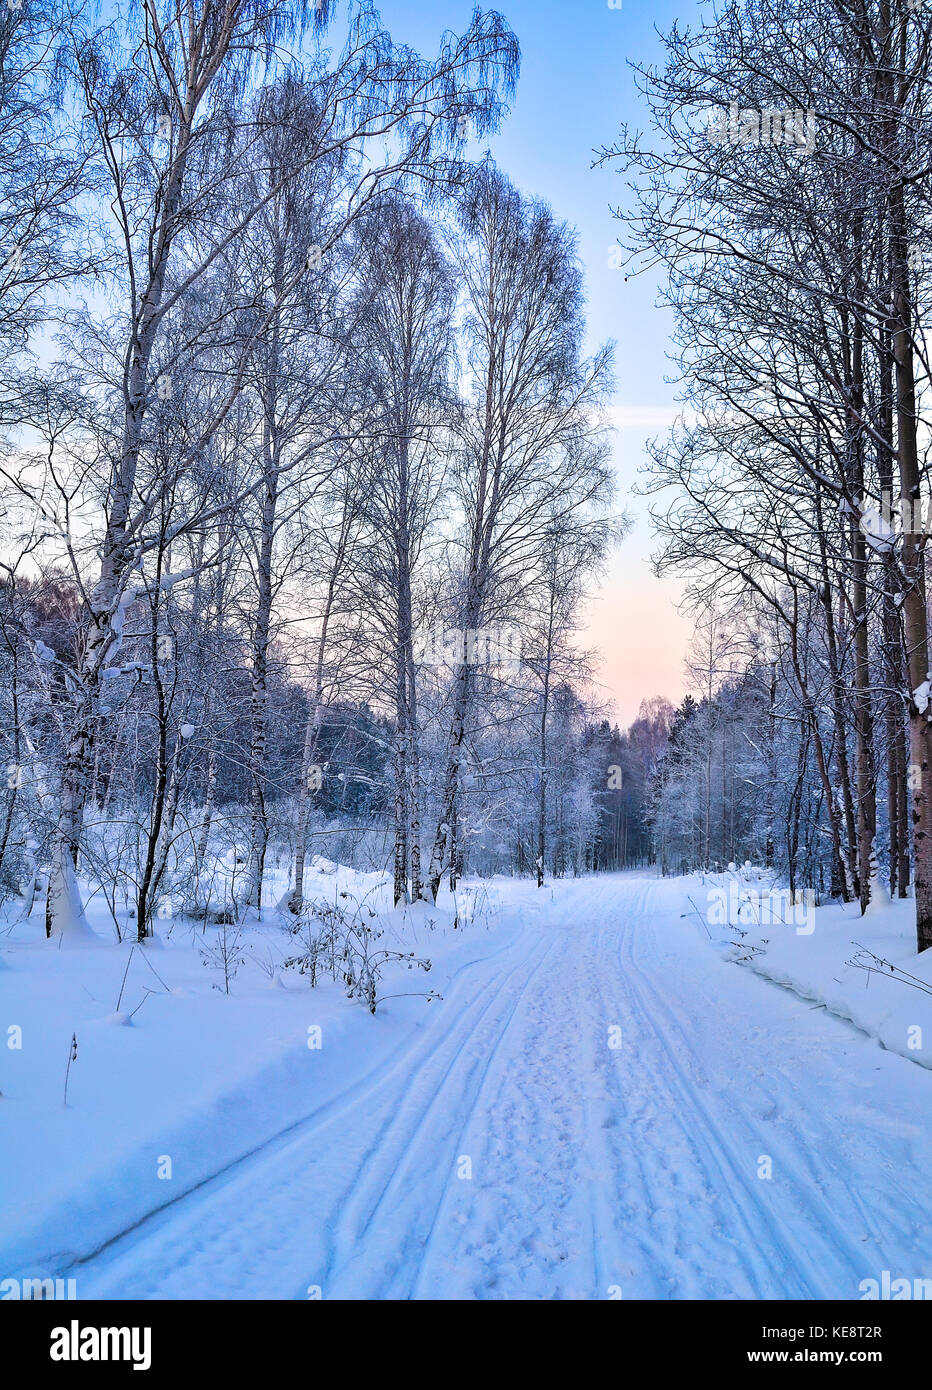 L'hiver doux matin rose sur une forêt enneigée route avec empreintes et pistes de ski sur la neige entre dans la distance - belles couleurs douces de l'hiver Banque D'Images